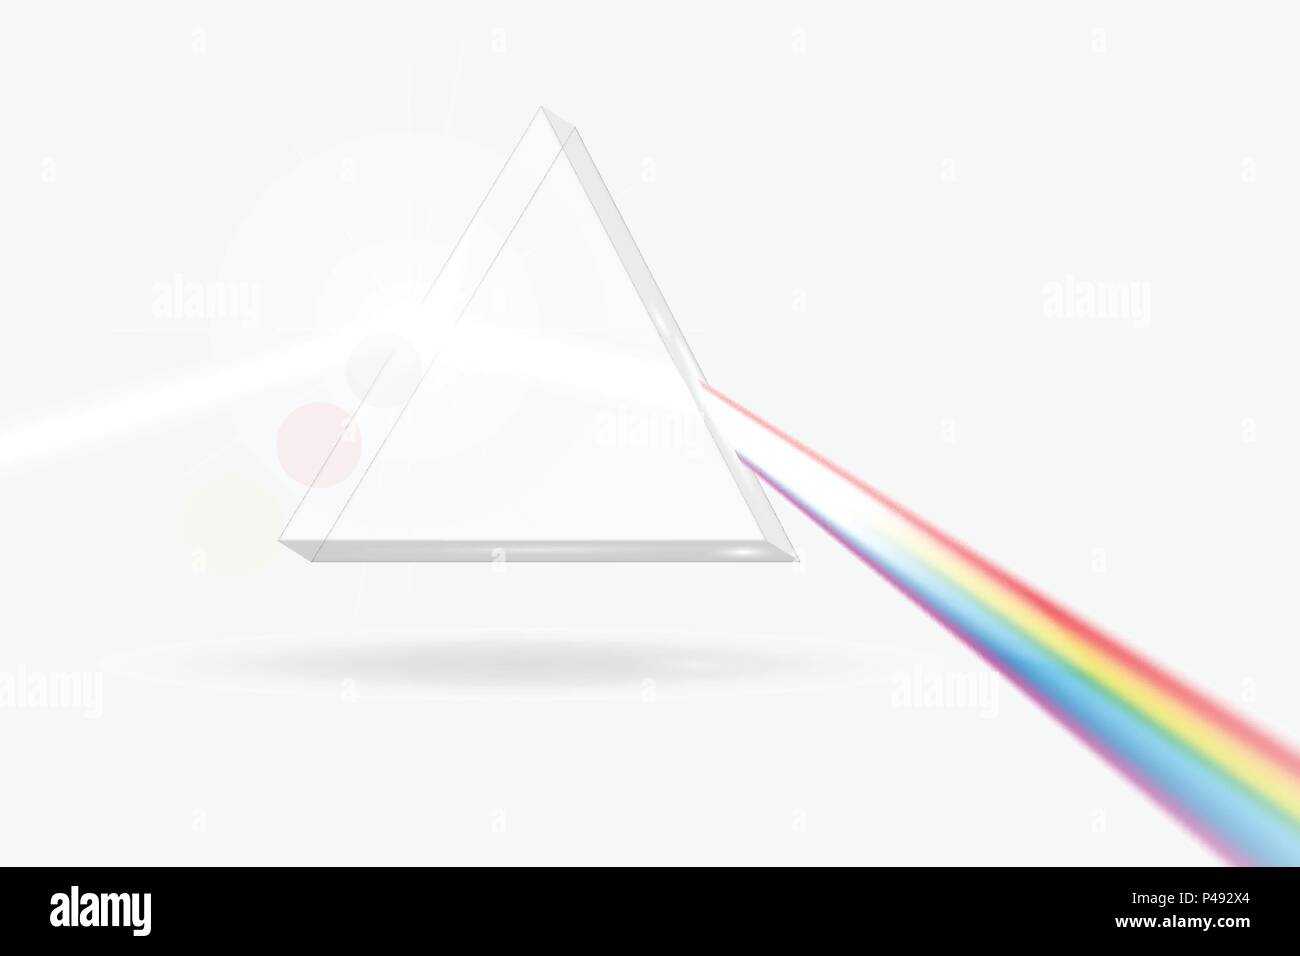 Prisma di spettro immagine. Elemento ottico trasparente prisma triangolare  la dispersione di un fascio di luce bianca, lunghezze d'onda arcobaleno  Immagine e Vettoriale - Alamy